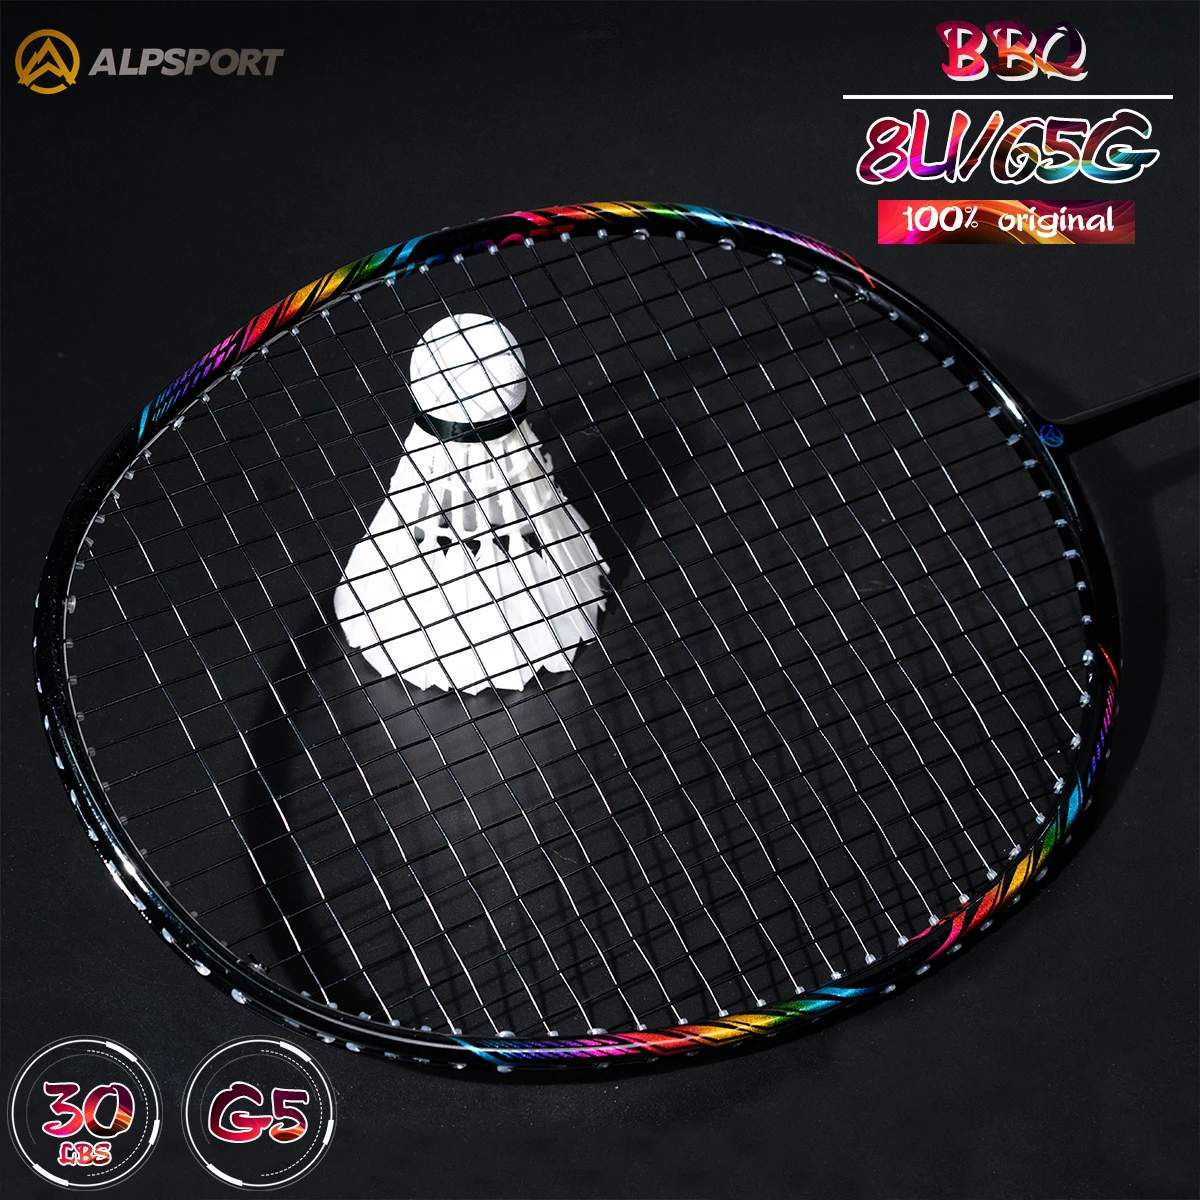 

Alpsport BBQ 8U/G5/T800 Ultra-light badminton racket Maximum 30 lbs 100% Professional Carbon Fiber (Includes bag and string)